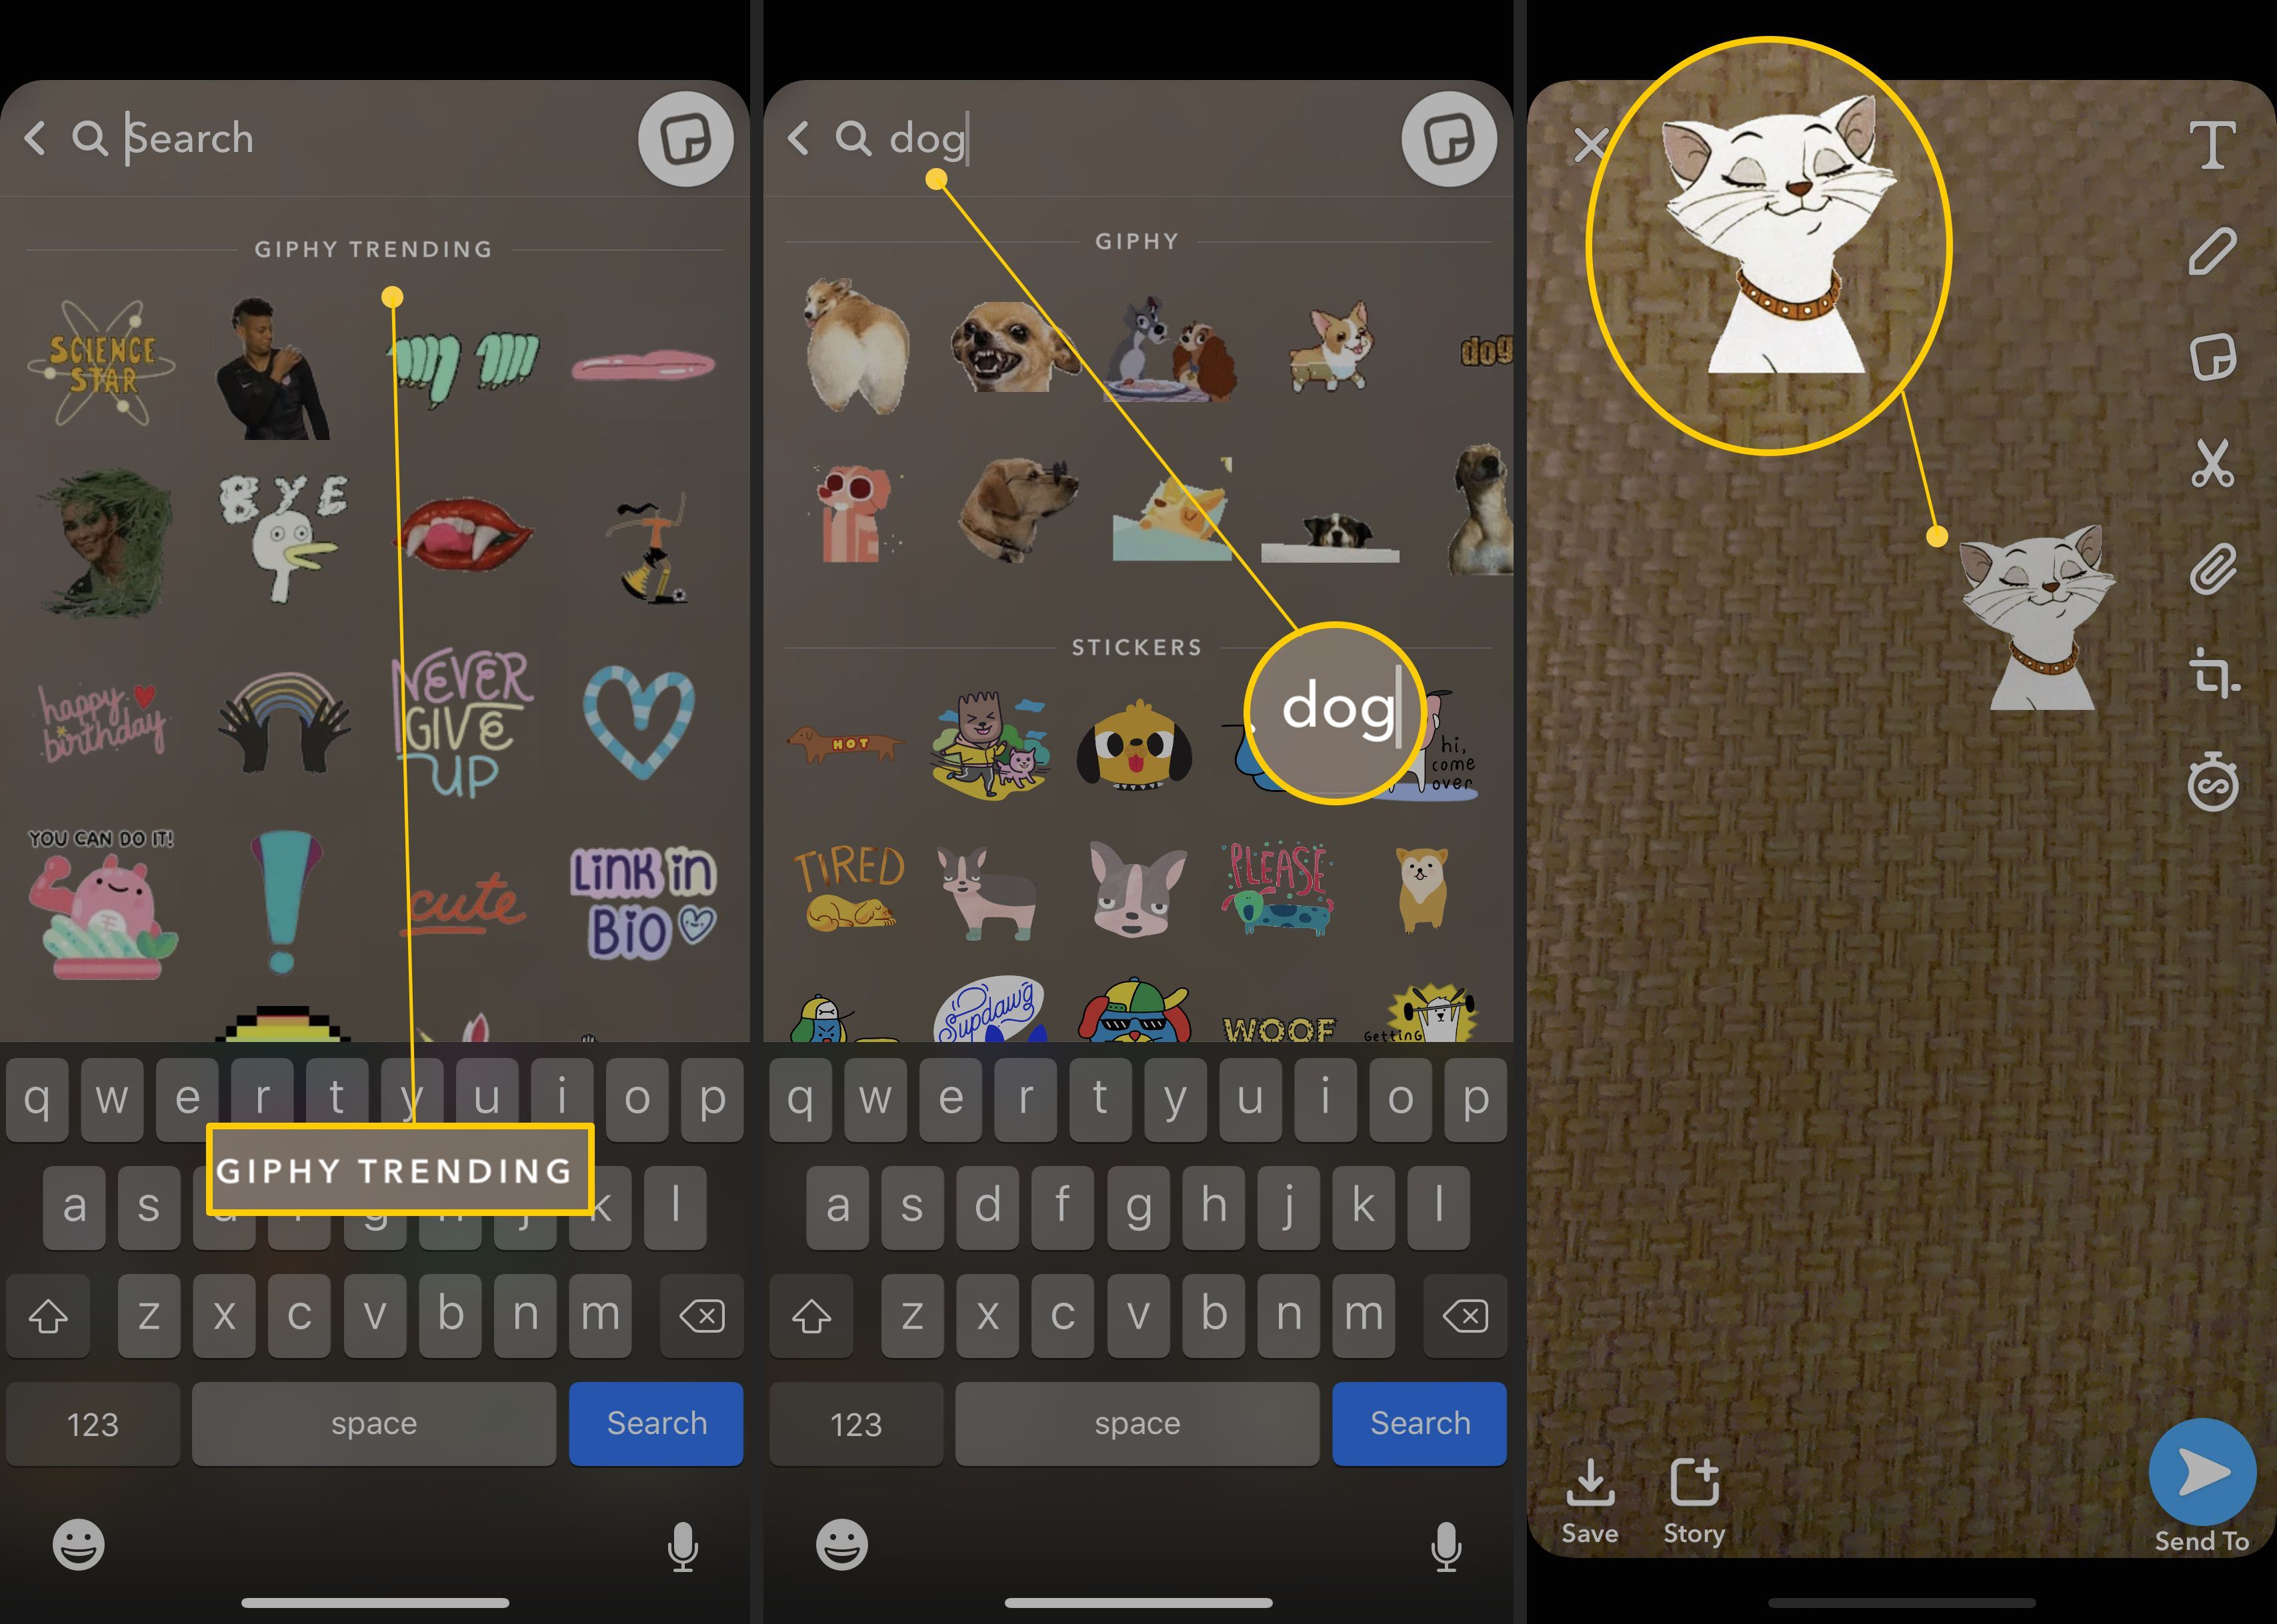 Шаги по поиску GIF-файлов через Snapchat's GIF interface